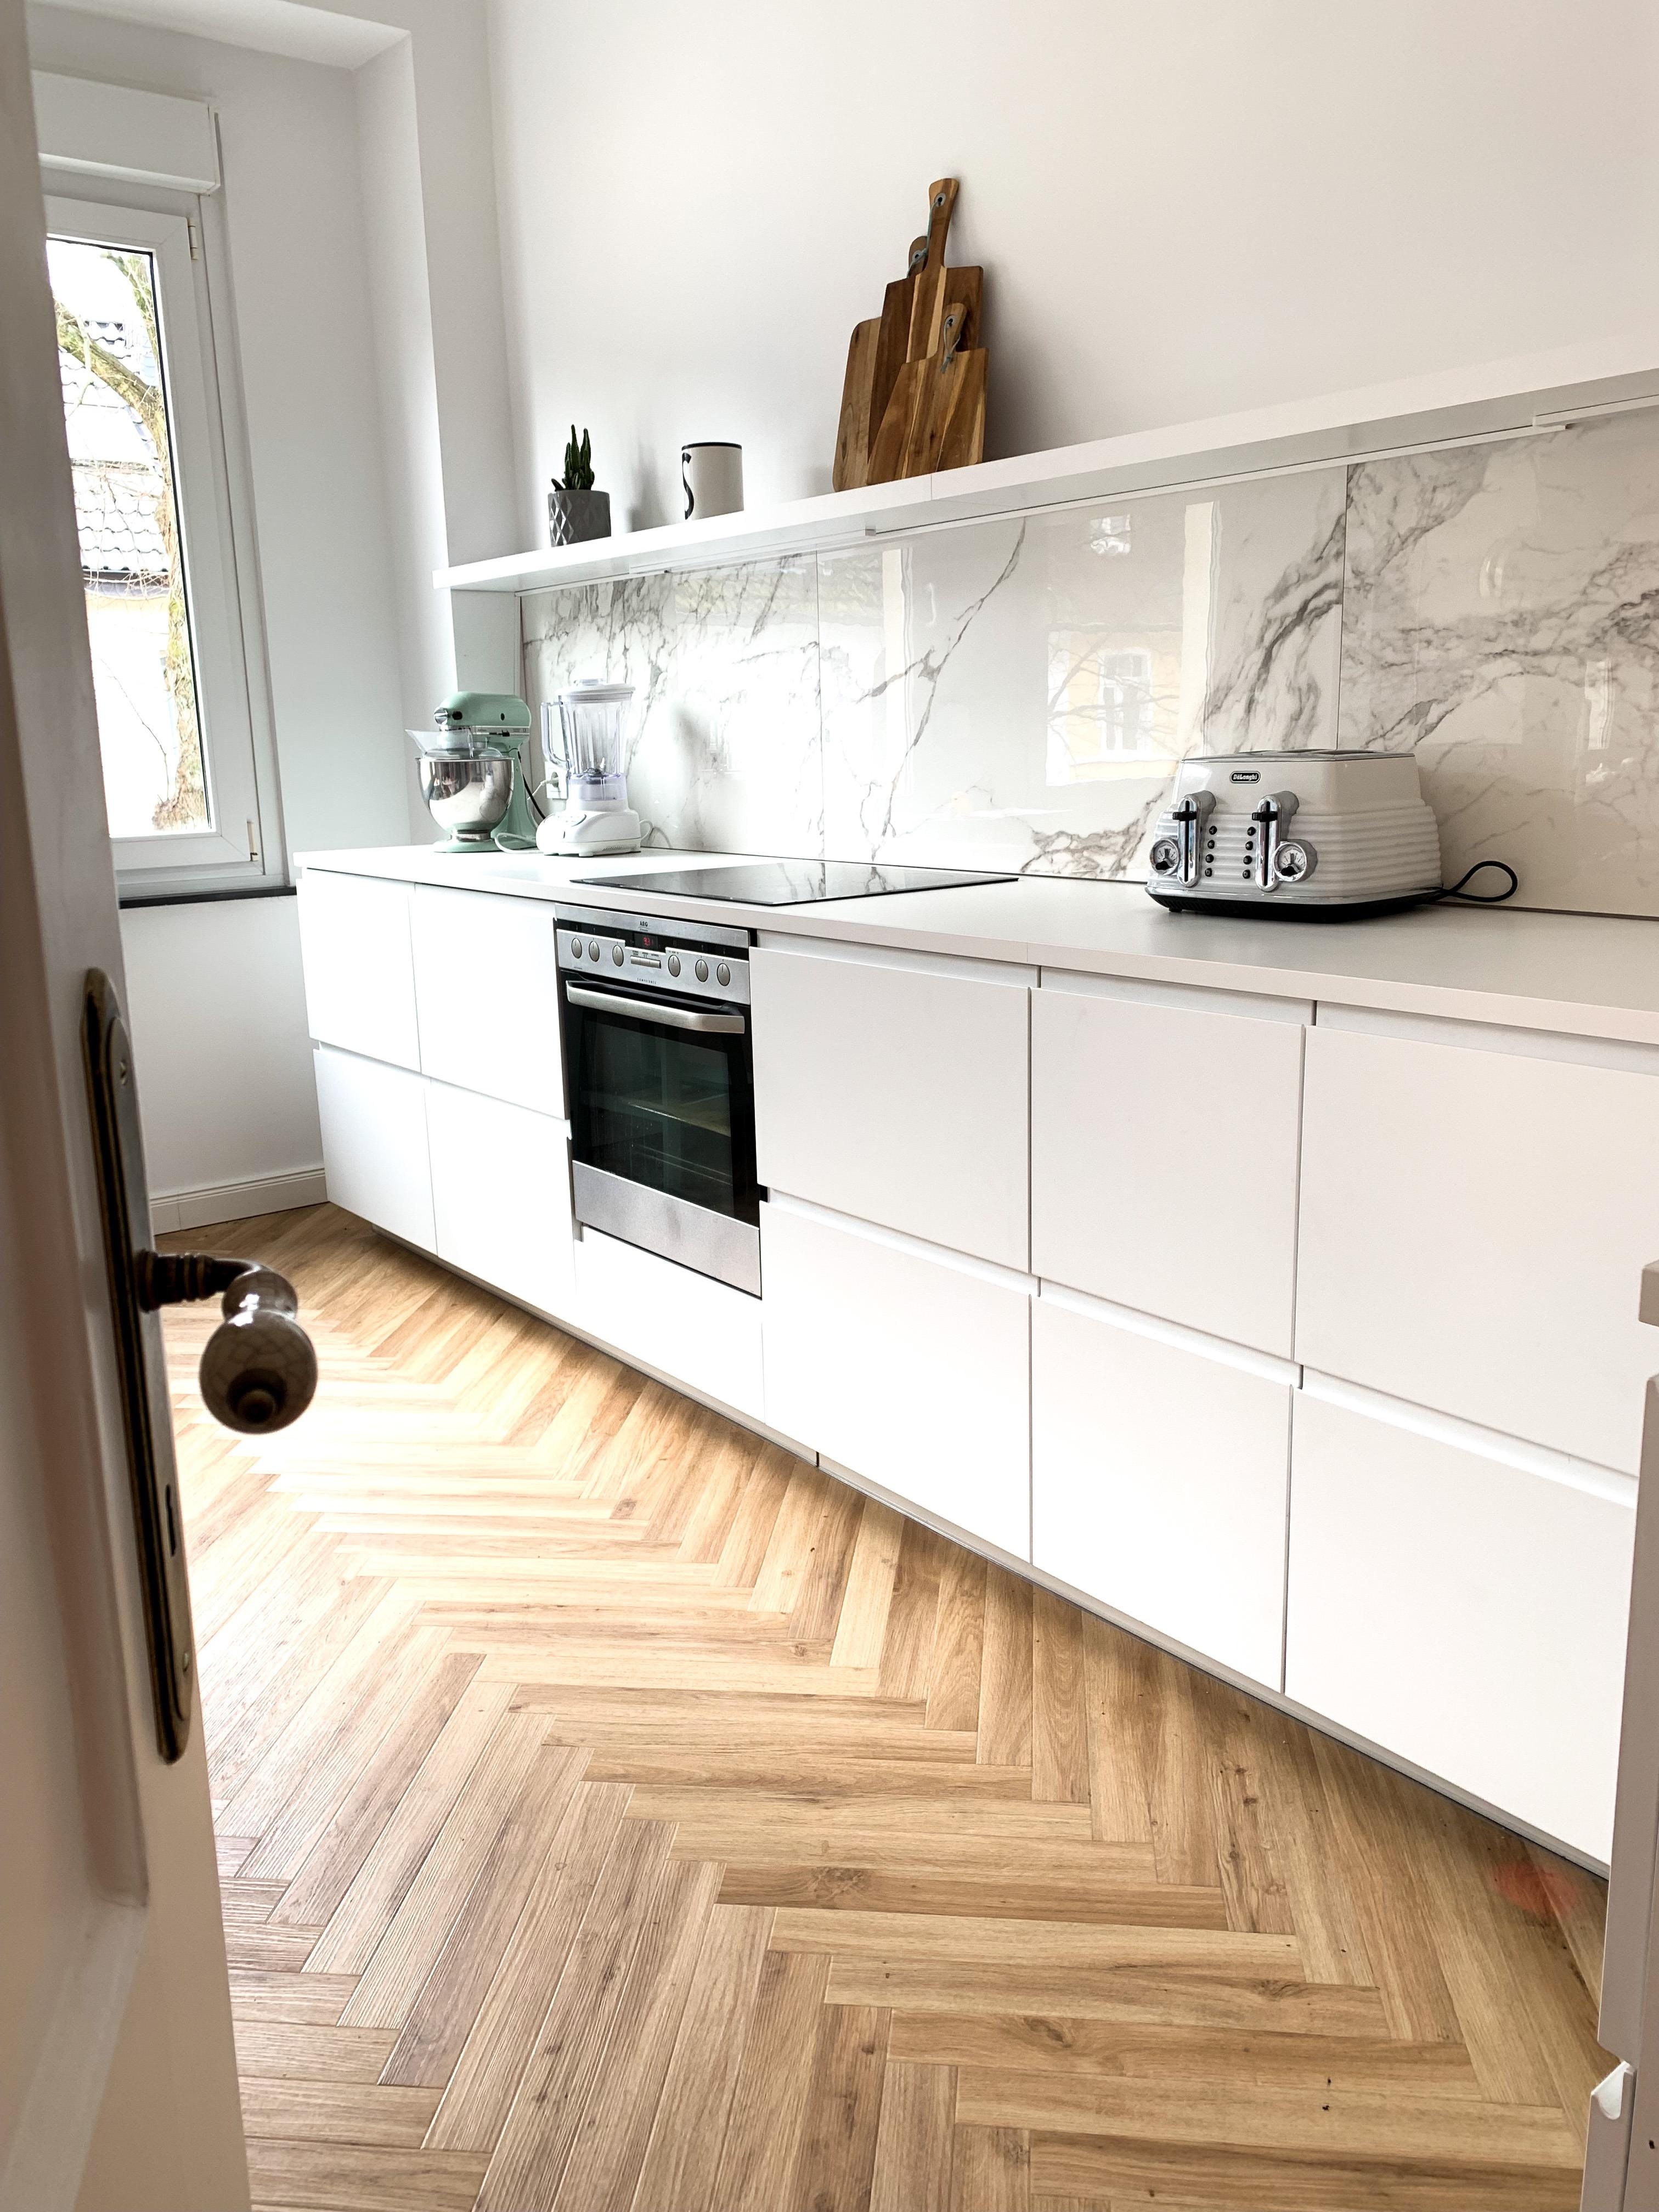 #marmor #küche #ikea #altbau #altbauliebe #dekoliebe #kücheninspo #blackandwhite #sanierung